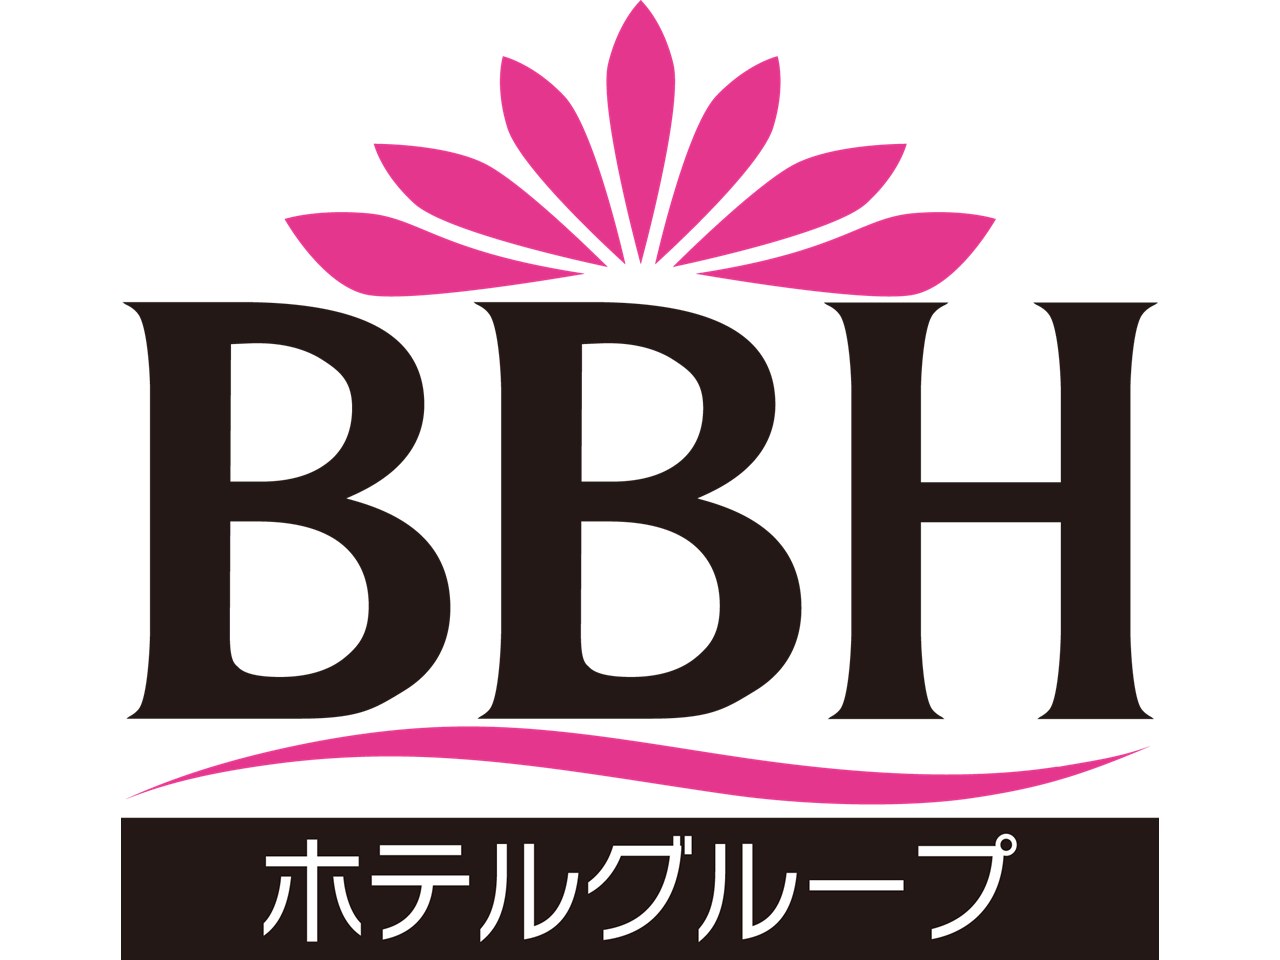 ブリーズベイホテルグループ - 伊豆熱川温泉ホテル セタスロイヤル